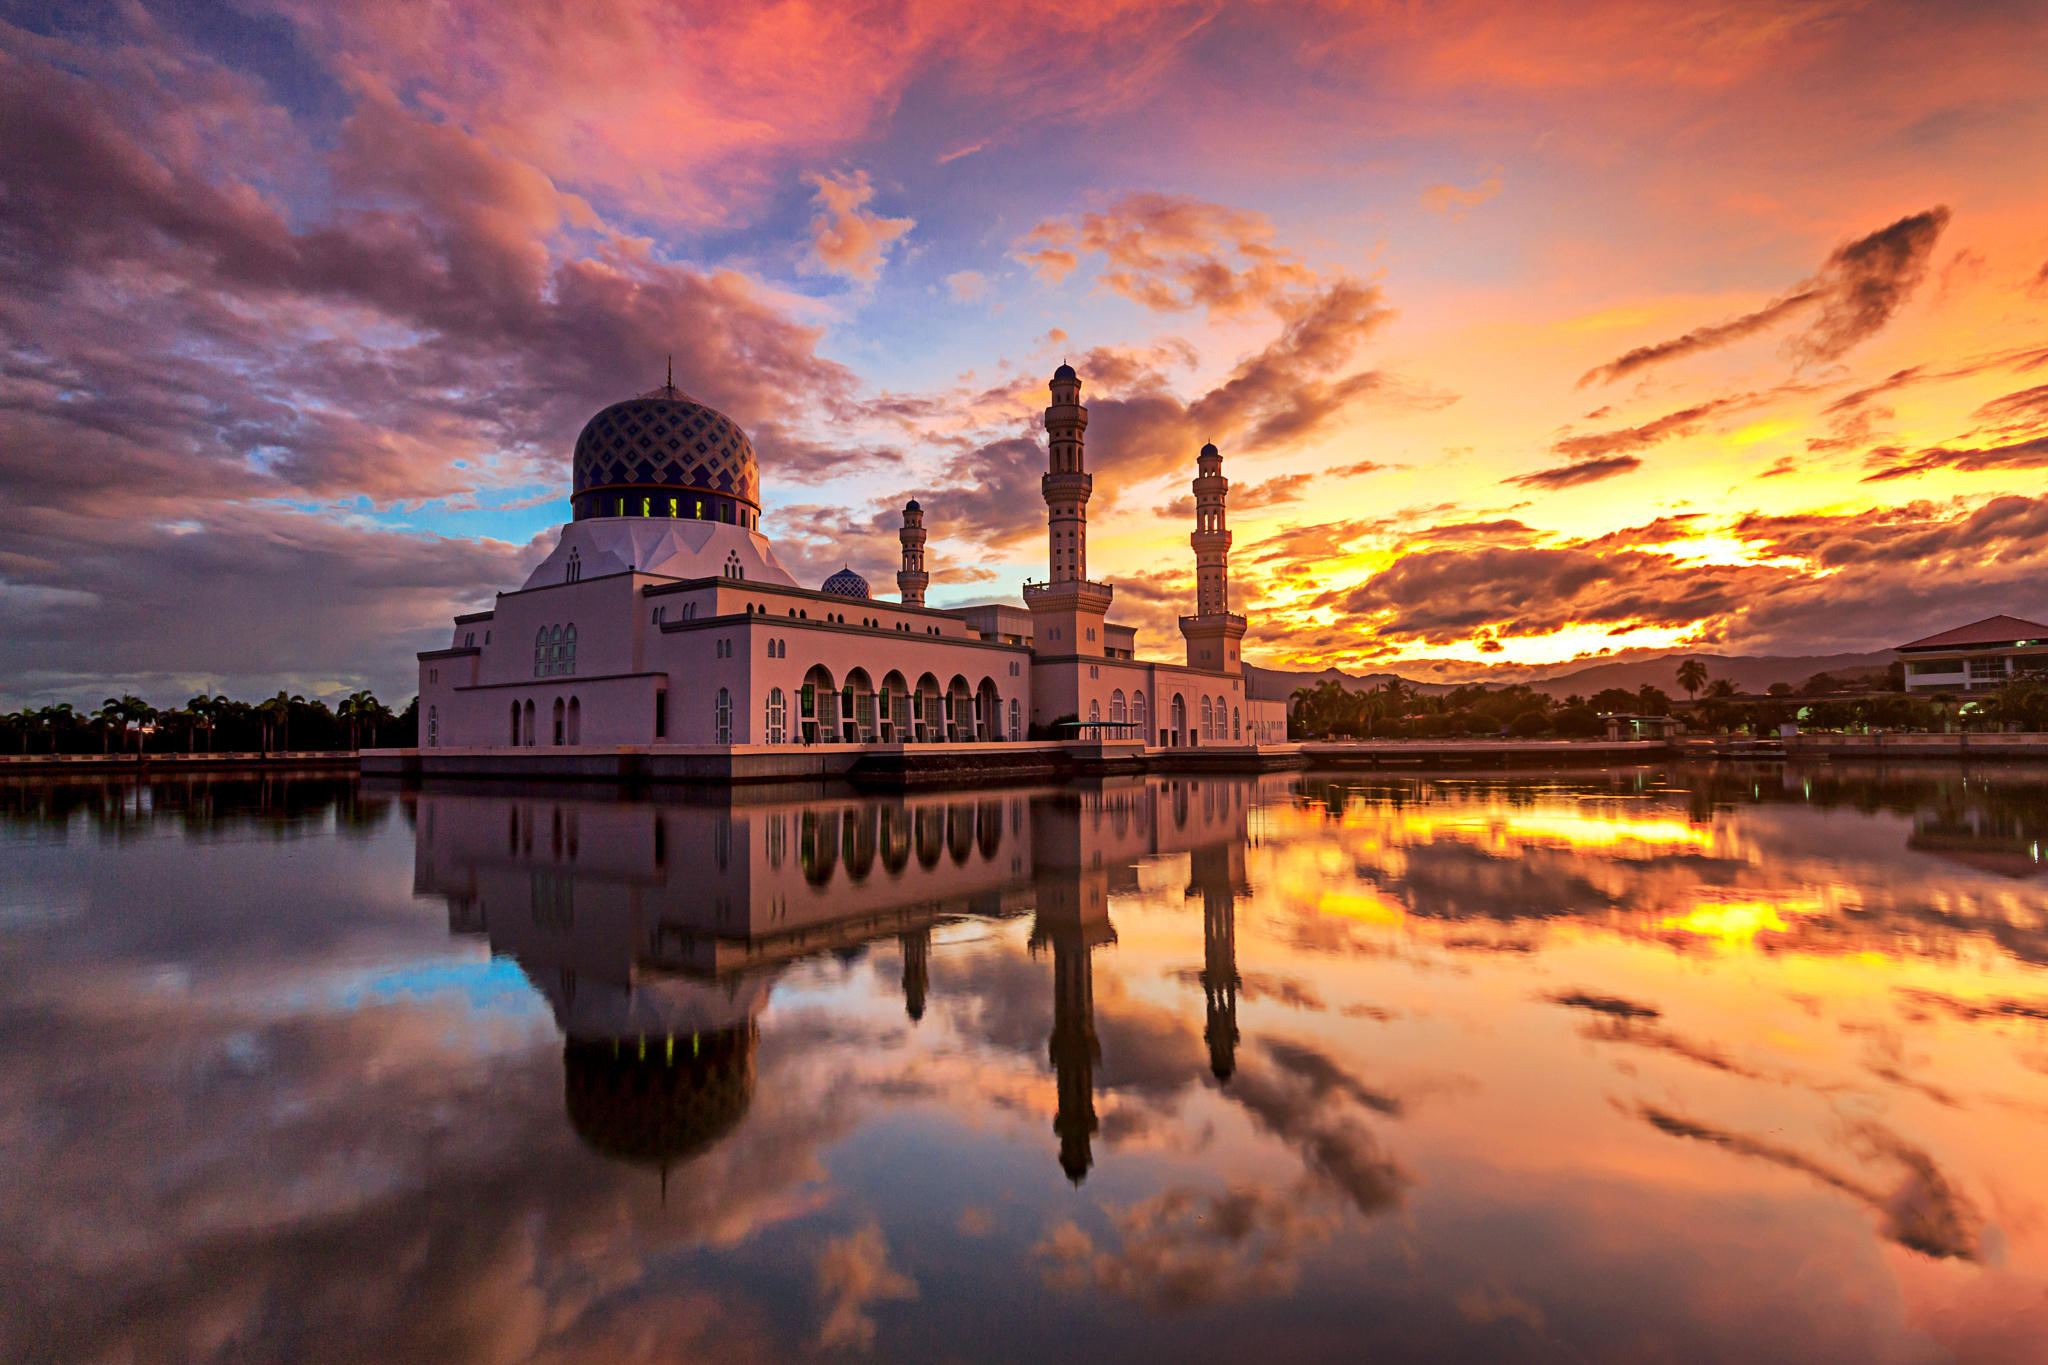 Colorful sunrise scene at Likas Mosque, Kota Kinabalu, Sabah, Ma